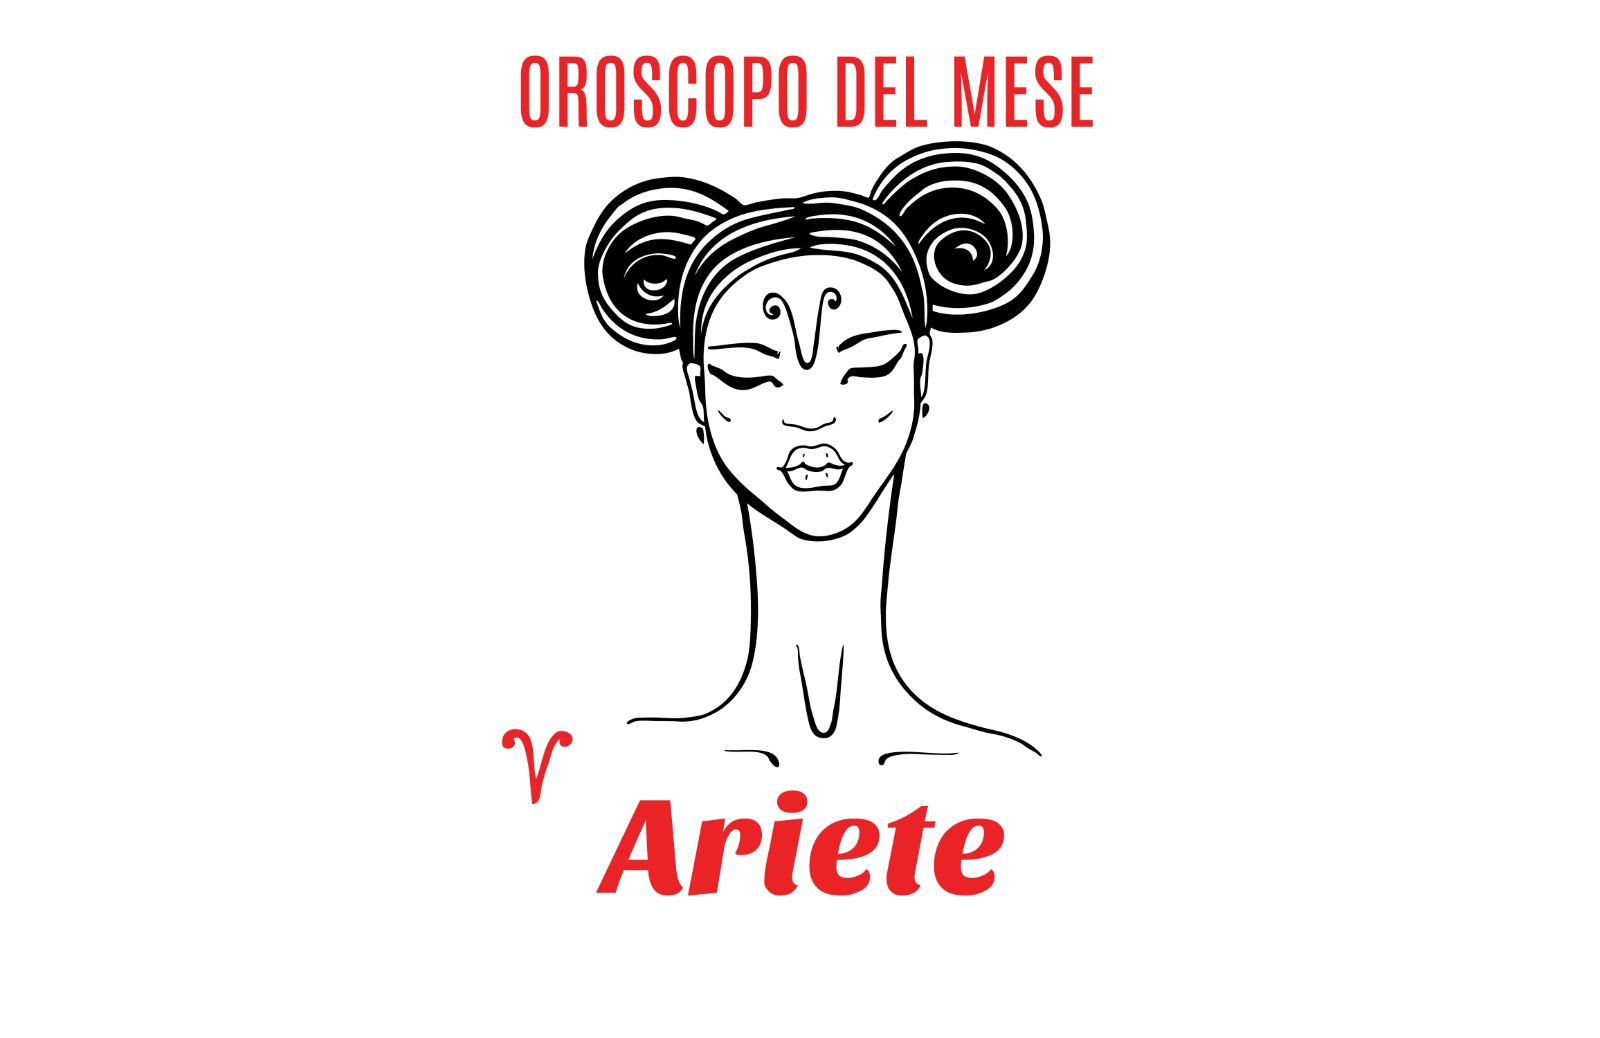 Oroscopo del mese: Ariete - novembre 2018